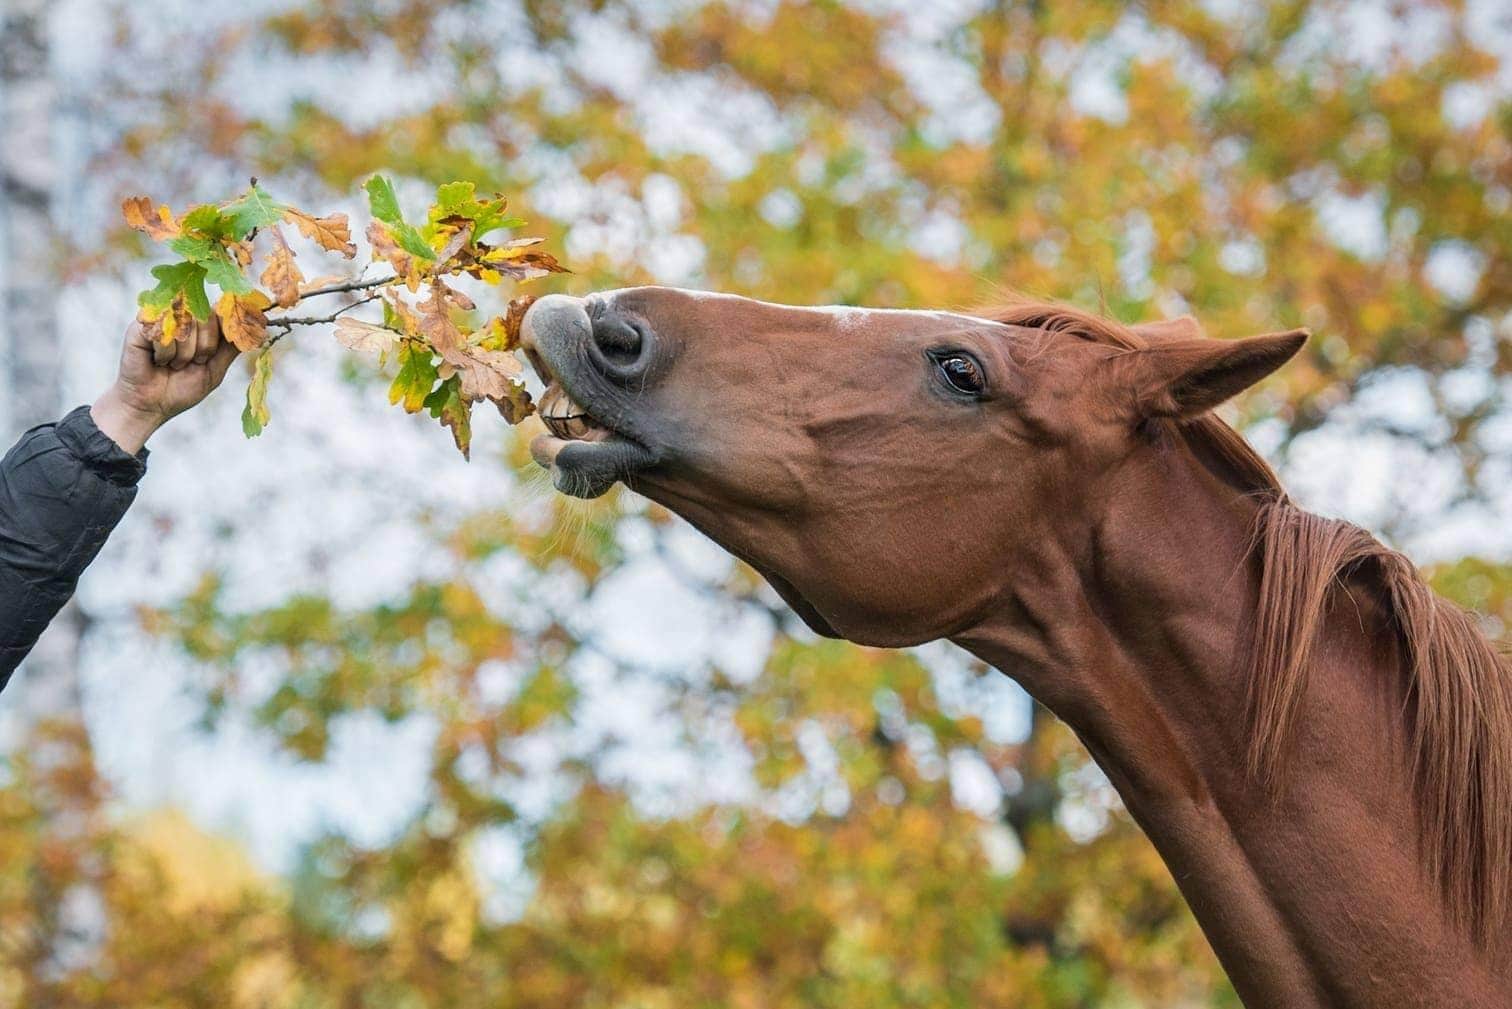 Tierquäler verletzt Pferd mit Messer - Polizei ermittelt geg